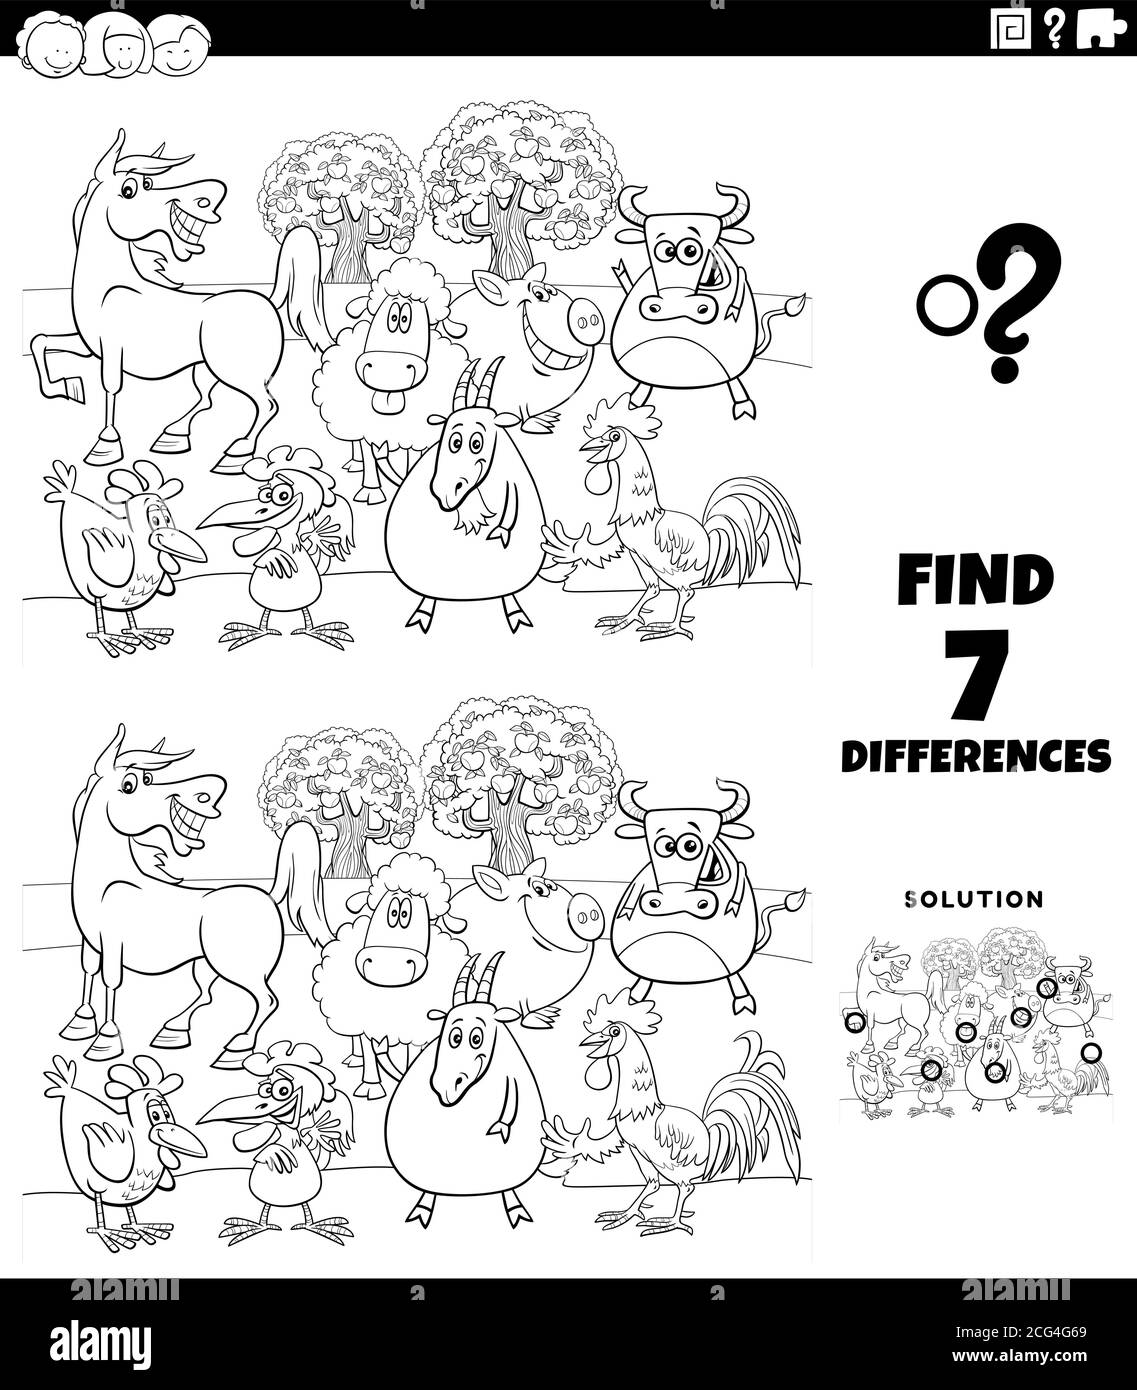 Dessin animé noir et blanc Illustration de la recherche de différences entre les images Jeu éducatif pour les enfants avec la couleur de personnages Comic Farm Animals Illustration de Vecteur